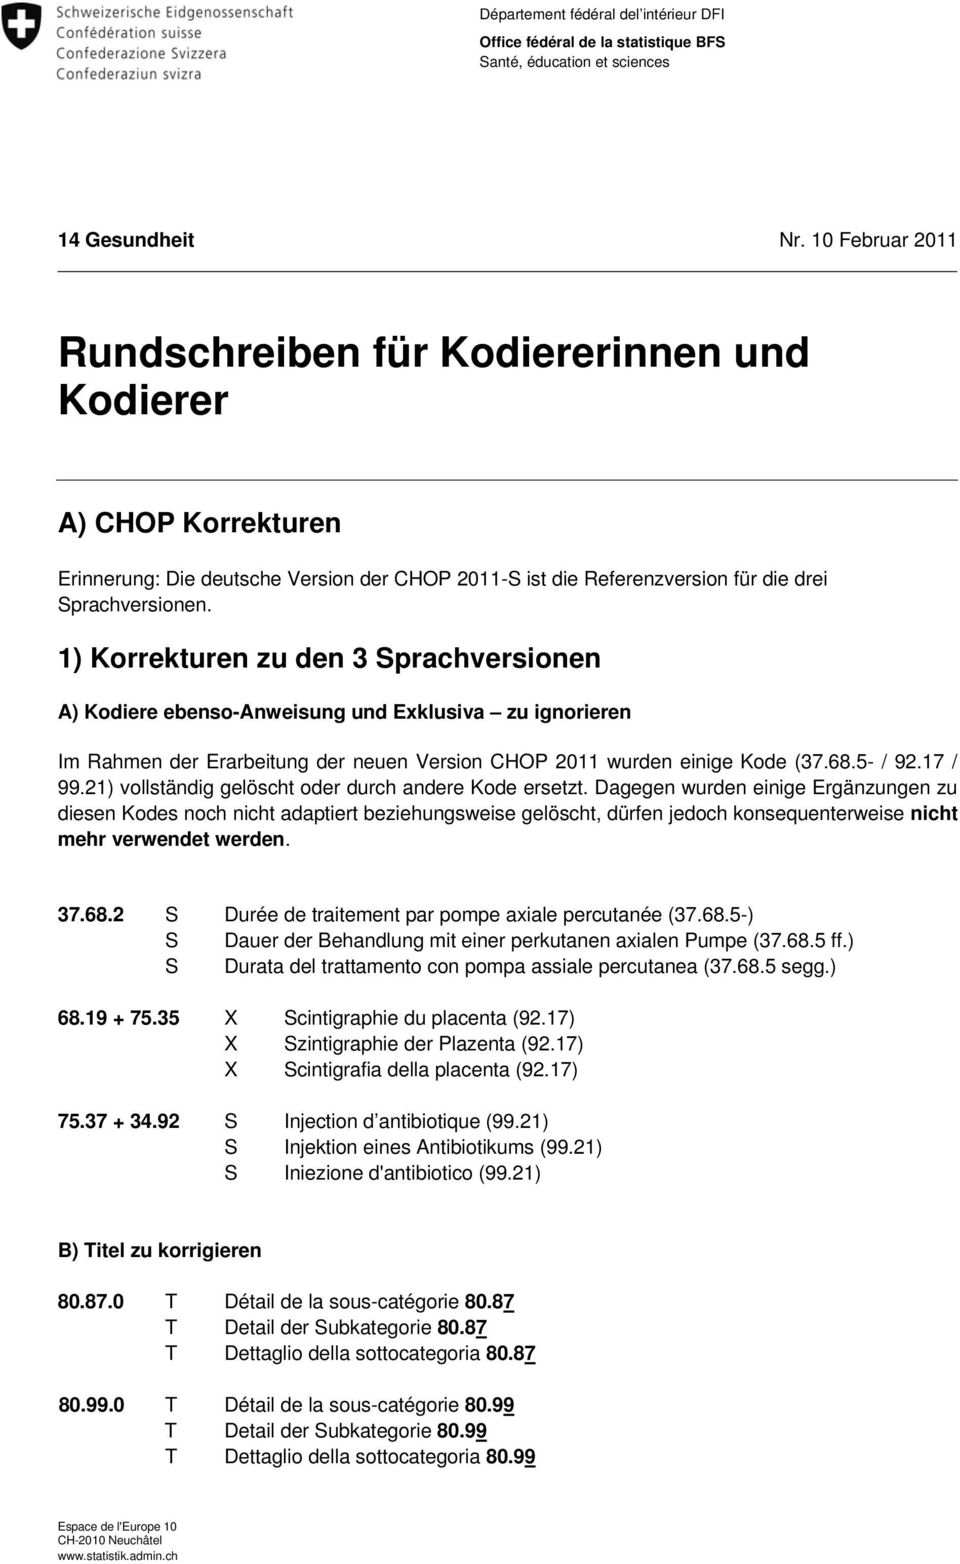 1) Korrekturen zu den 3 Sprachversionen A) Kodiere ebenso-anweisung und Exklusiva zu ignorieren Im Rahmen der Erarbeitung der neuen Version CHOP 2011 wurden einige Kode (37.68.5- / 92.17 / 99.